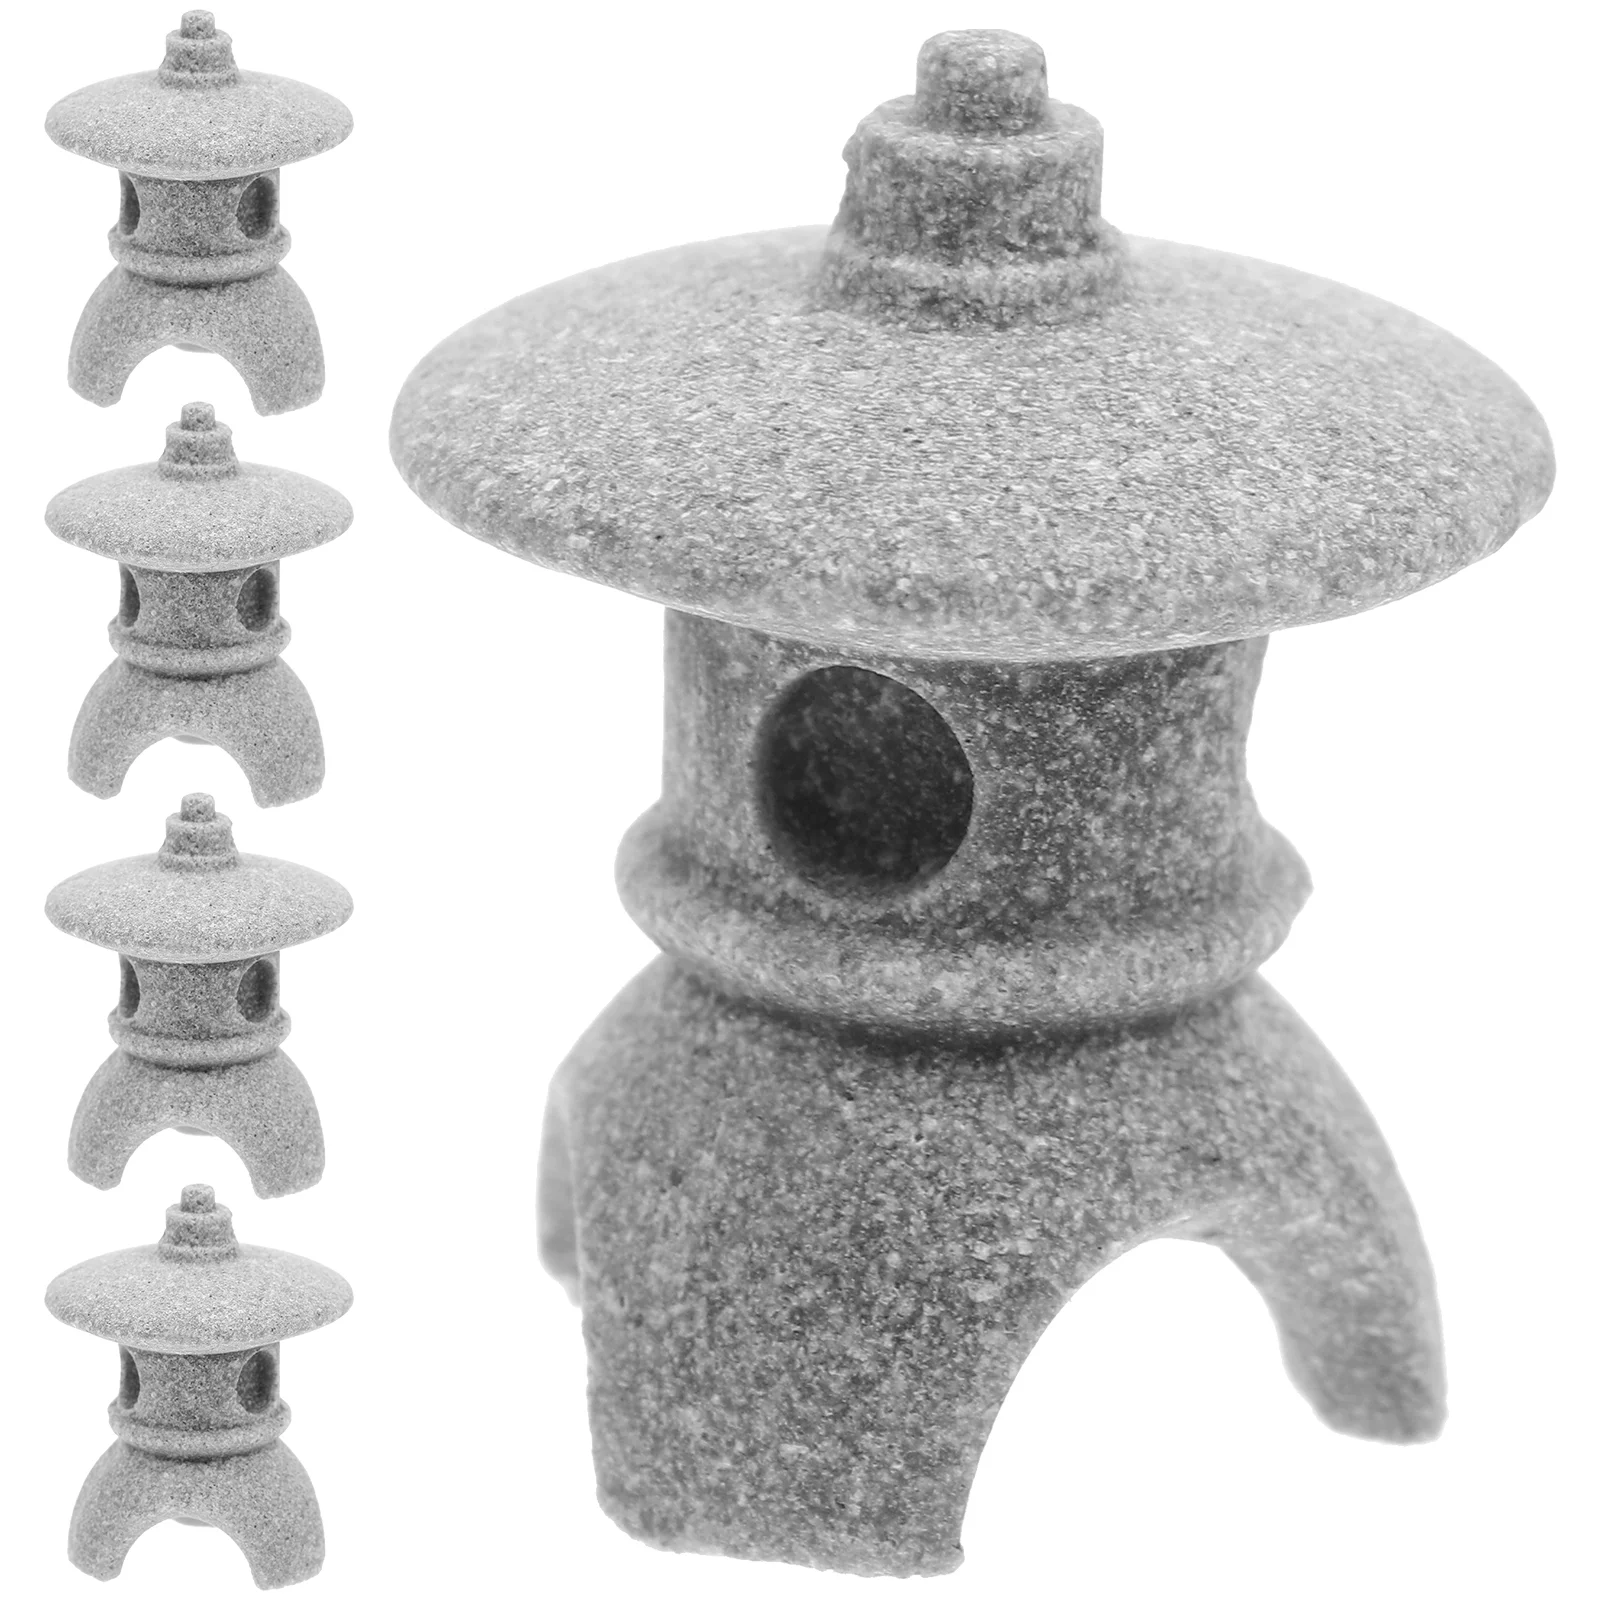 

5 Pcs Miniature Japanese Decor Stones Pagoda Lantern Home Décor Simulation Landscape Pavilion Bonsai Mini Decoration